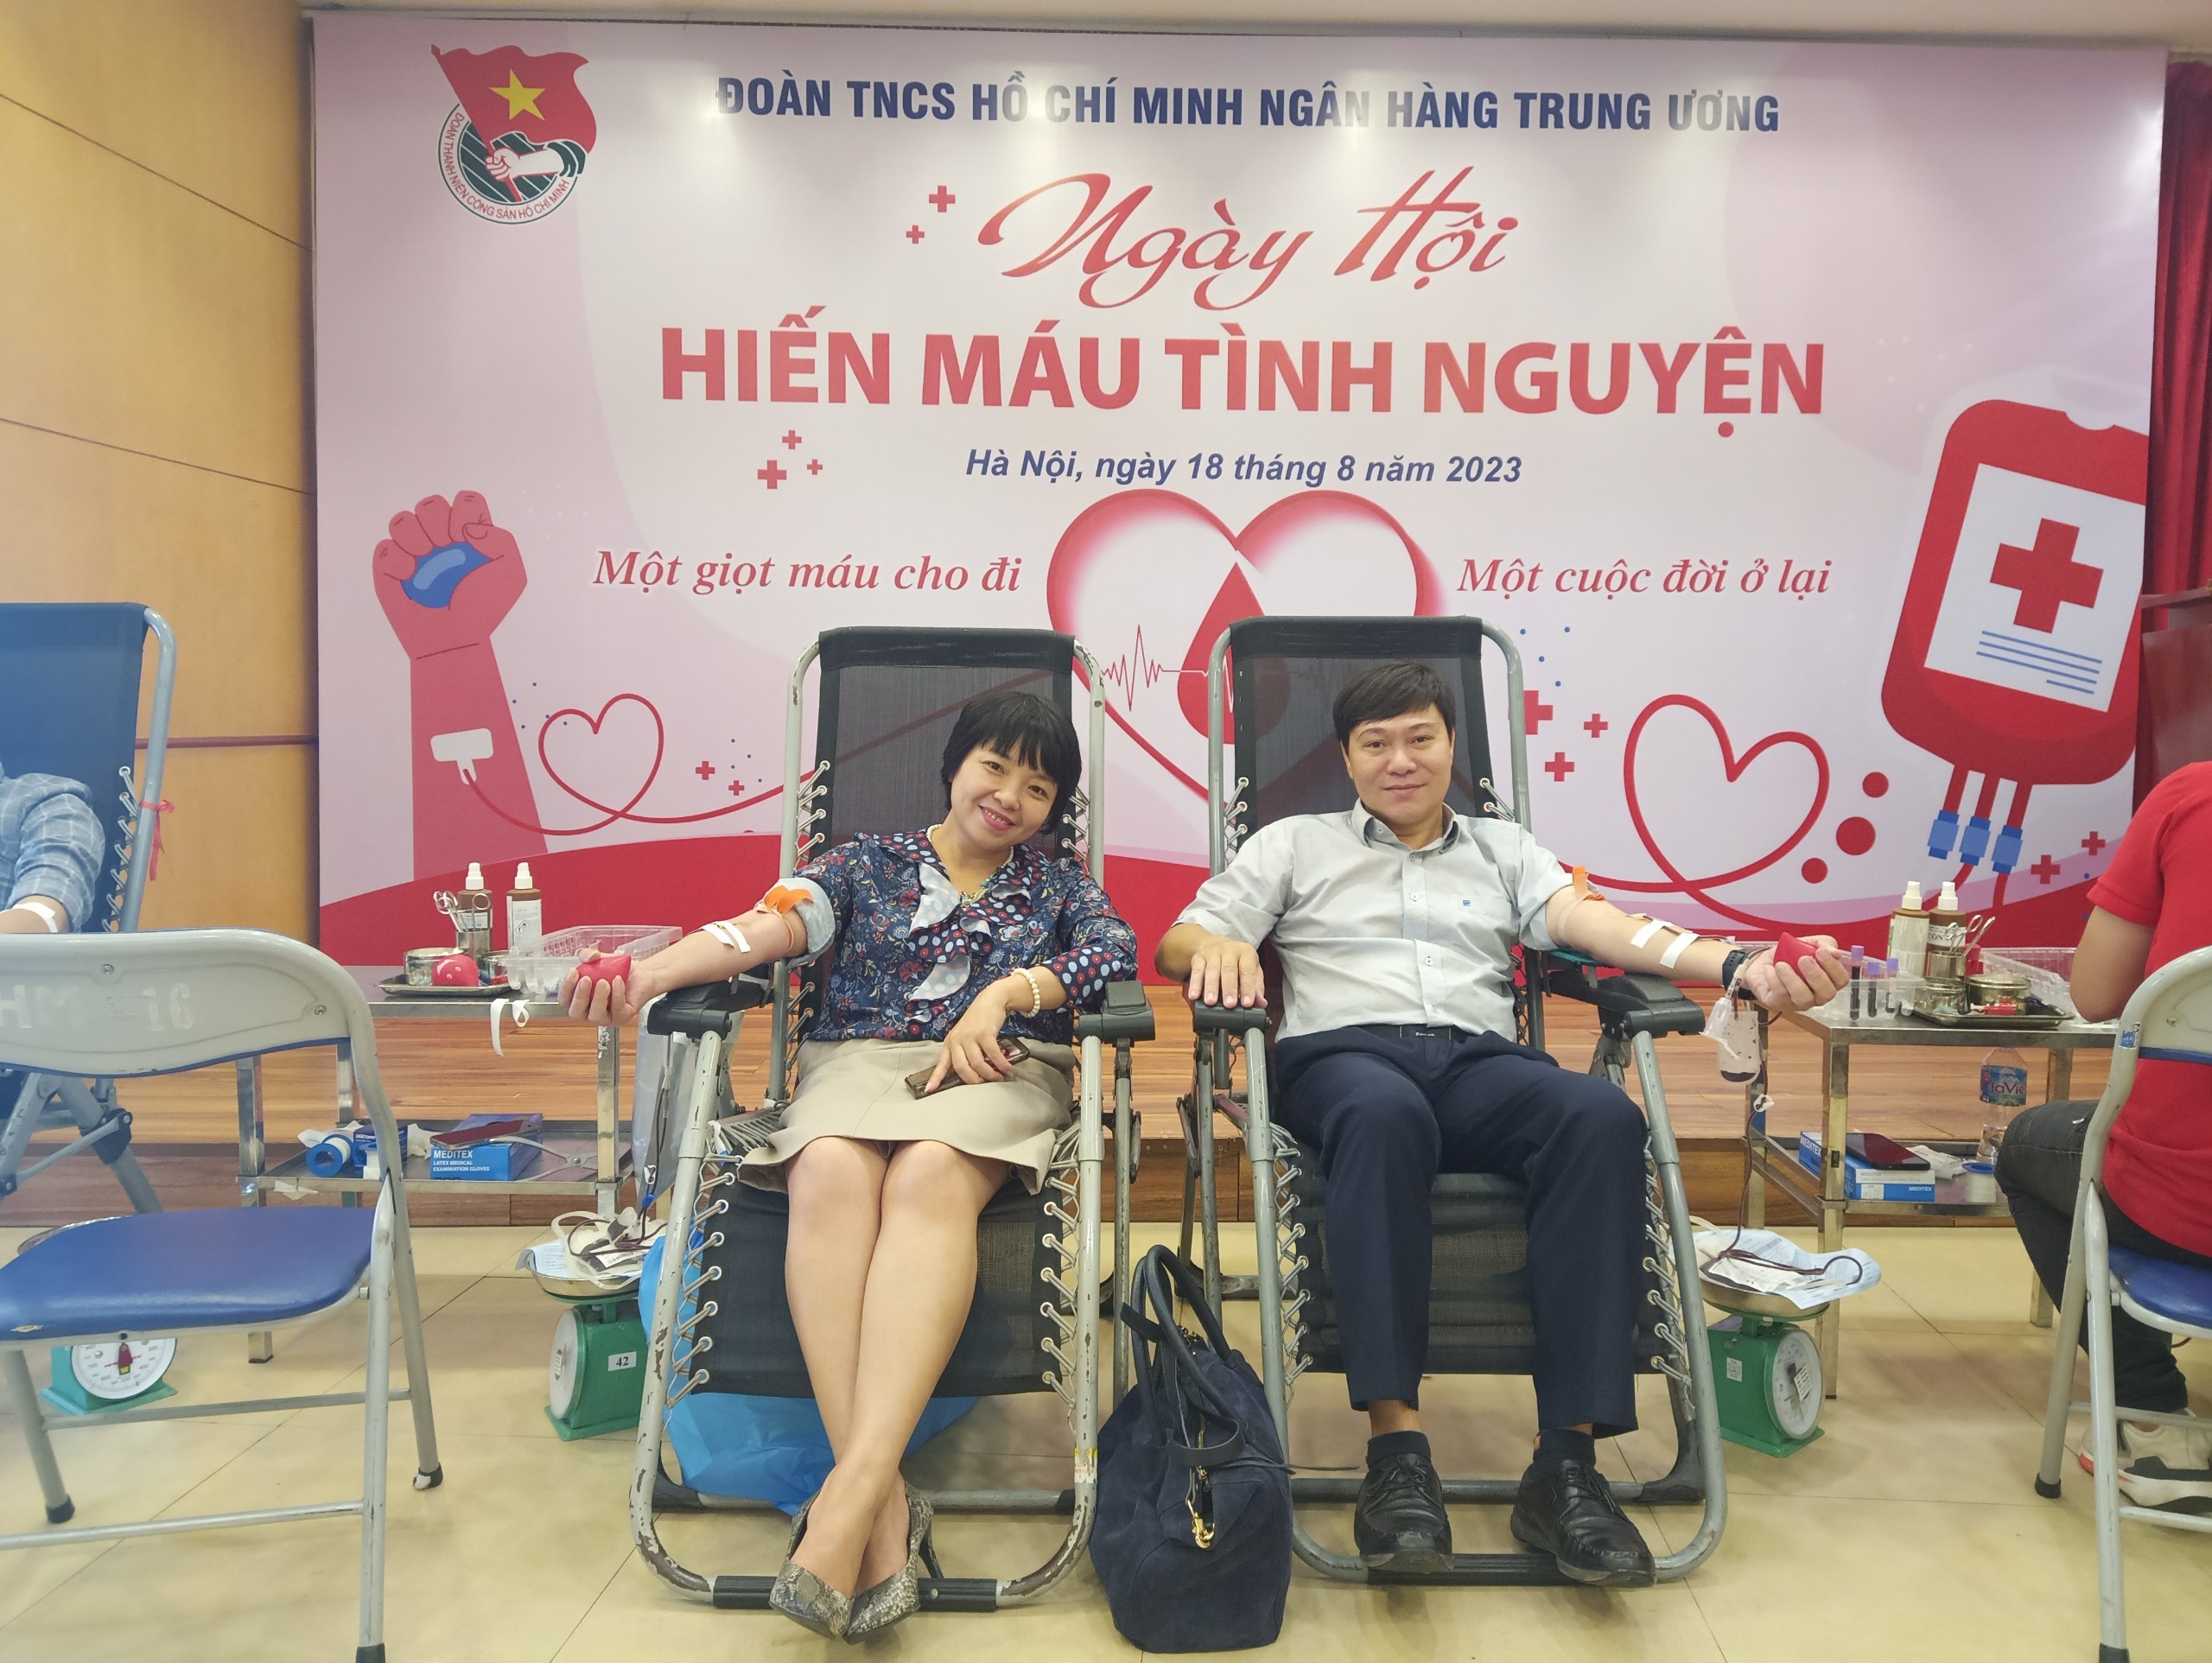 Đoàn Thanh niên Ngân hàng Trung ương tổ chức Chương trình hiến máu tình nguyện đợt II năm 2023